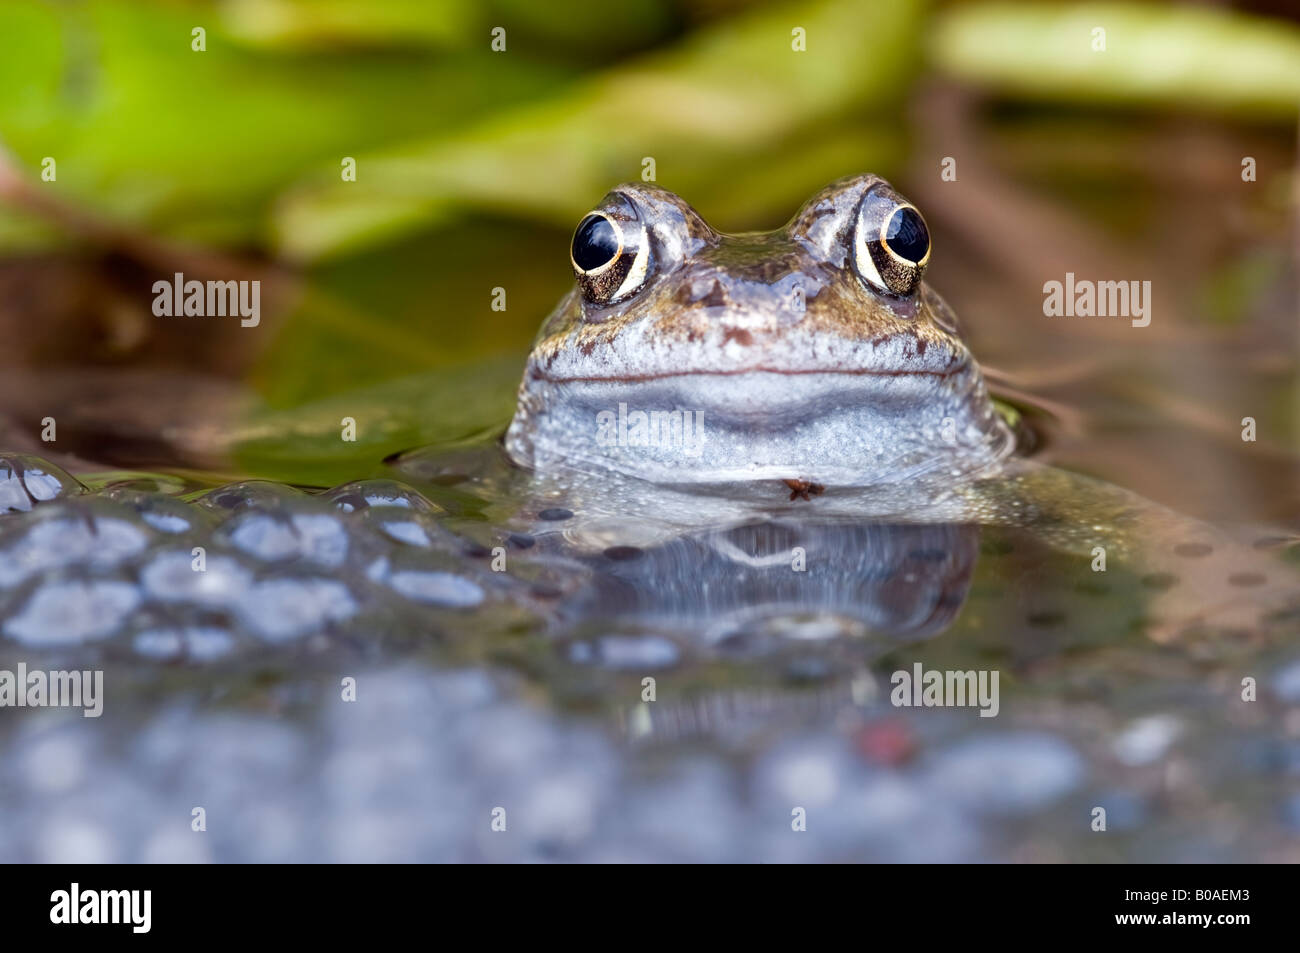 Rana comune (Rana temporaria) in un laghetto in giardino con frogspawn Foto Stock